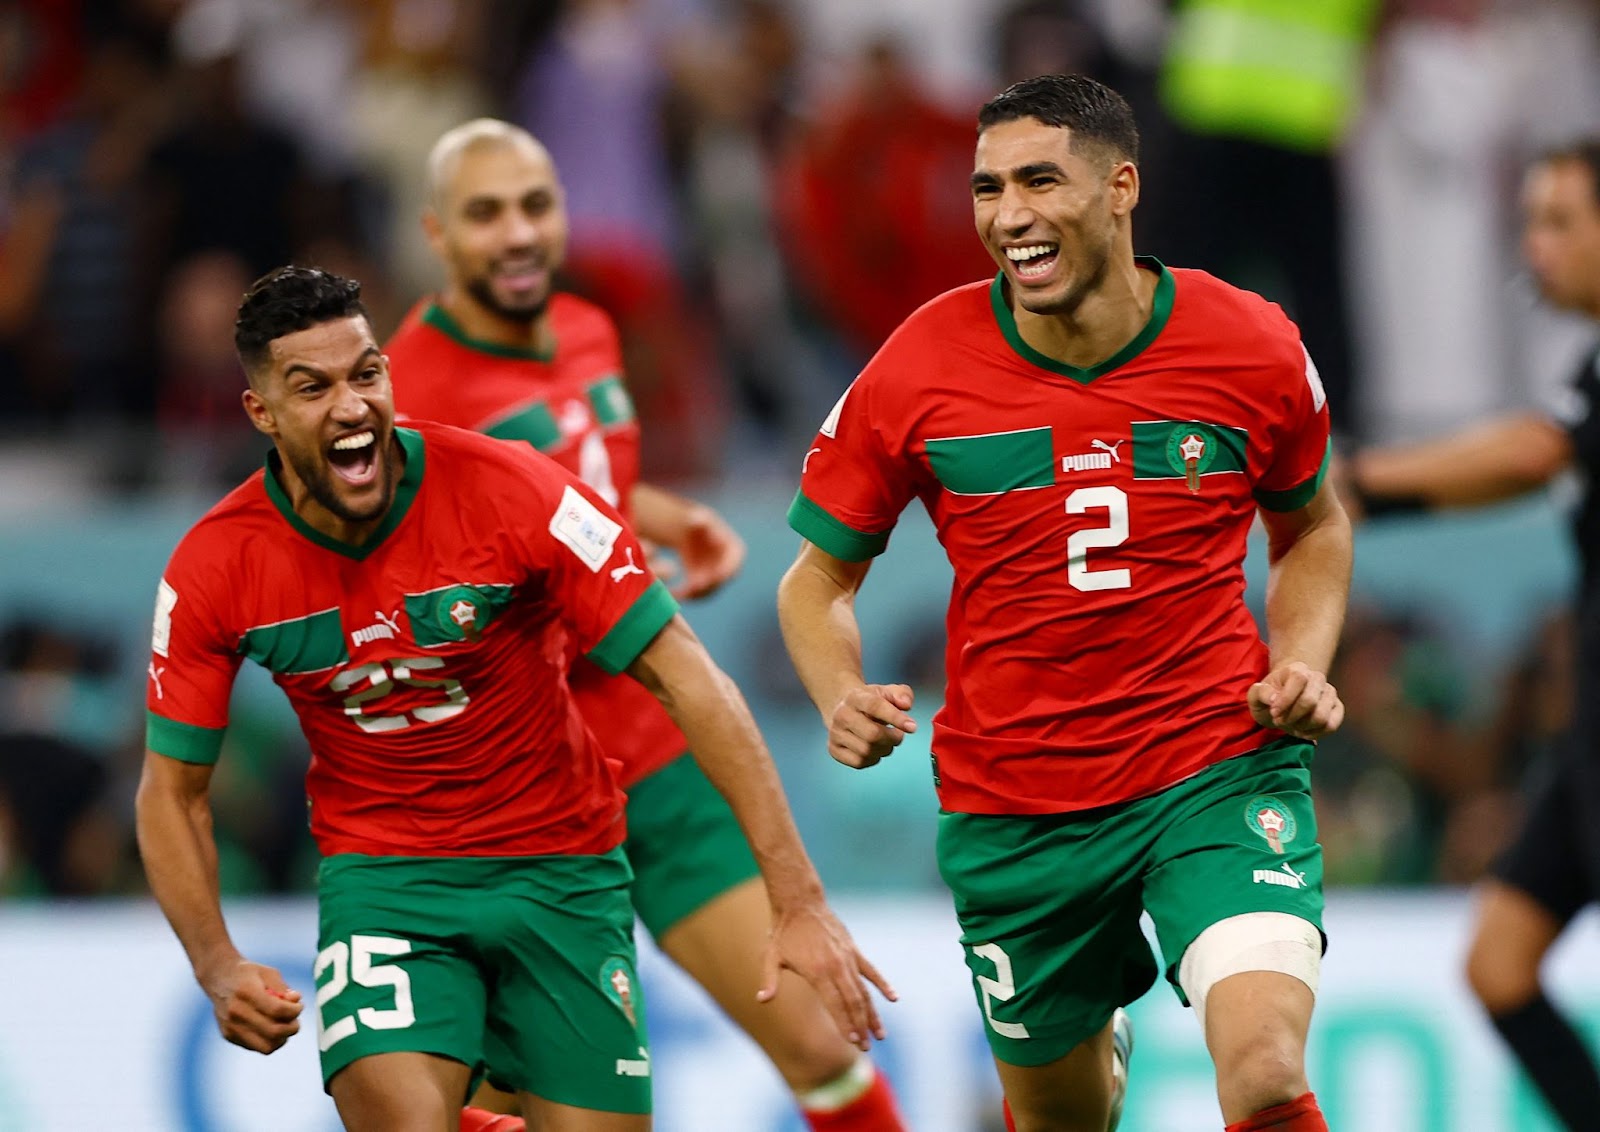 đánh bại tây ban nha trên chấm phạt đền, đội tuyển morocco bước vào tứ kết world cup 2022